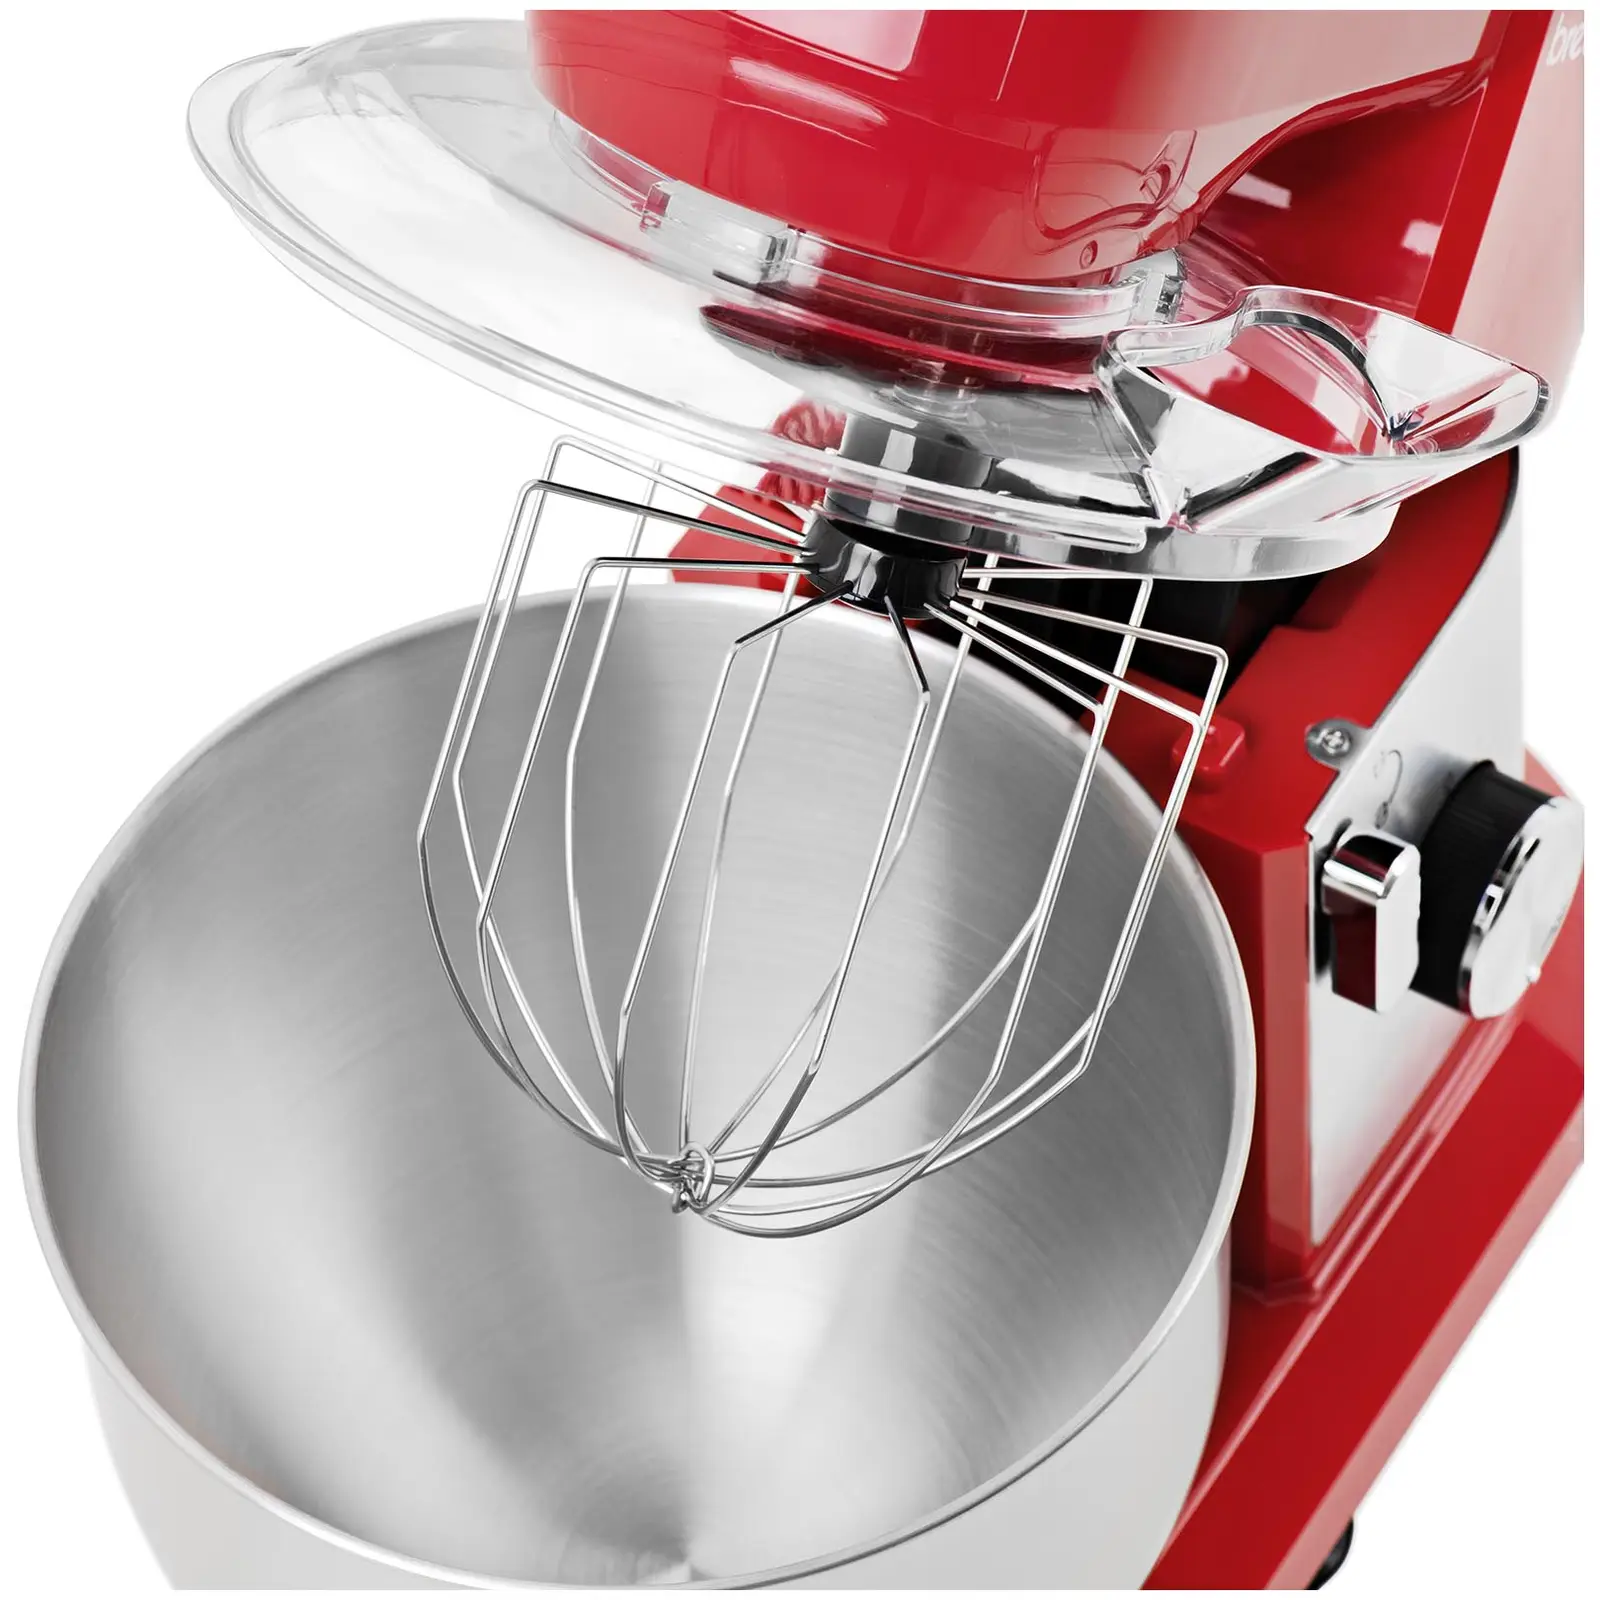 Kuchyňský robot - 1 300 W - červený